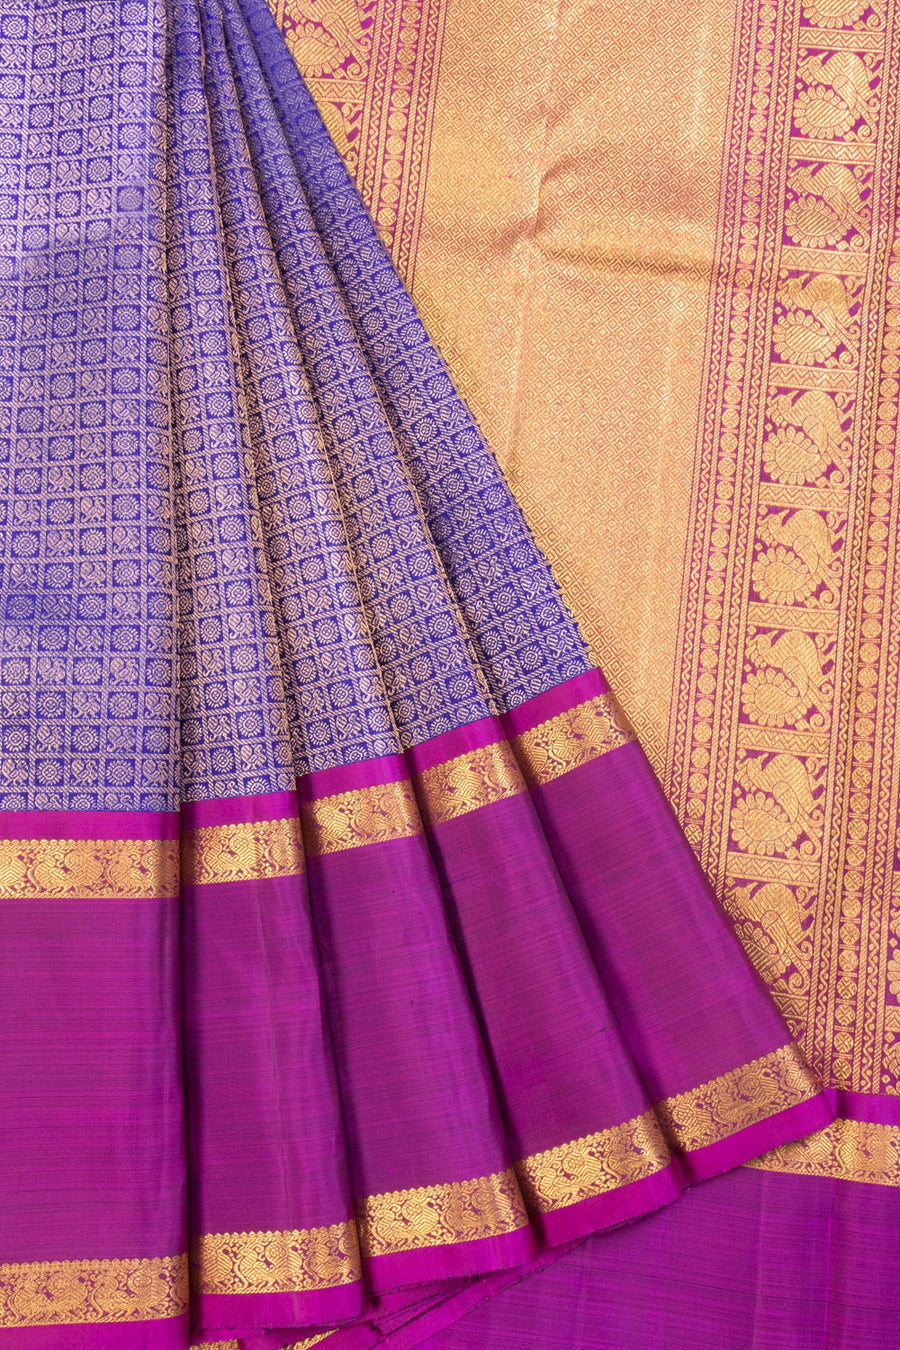 Blue Bridal Kanjivaram Silk Saree 10070590 - Avishya